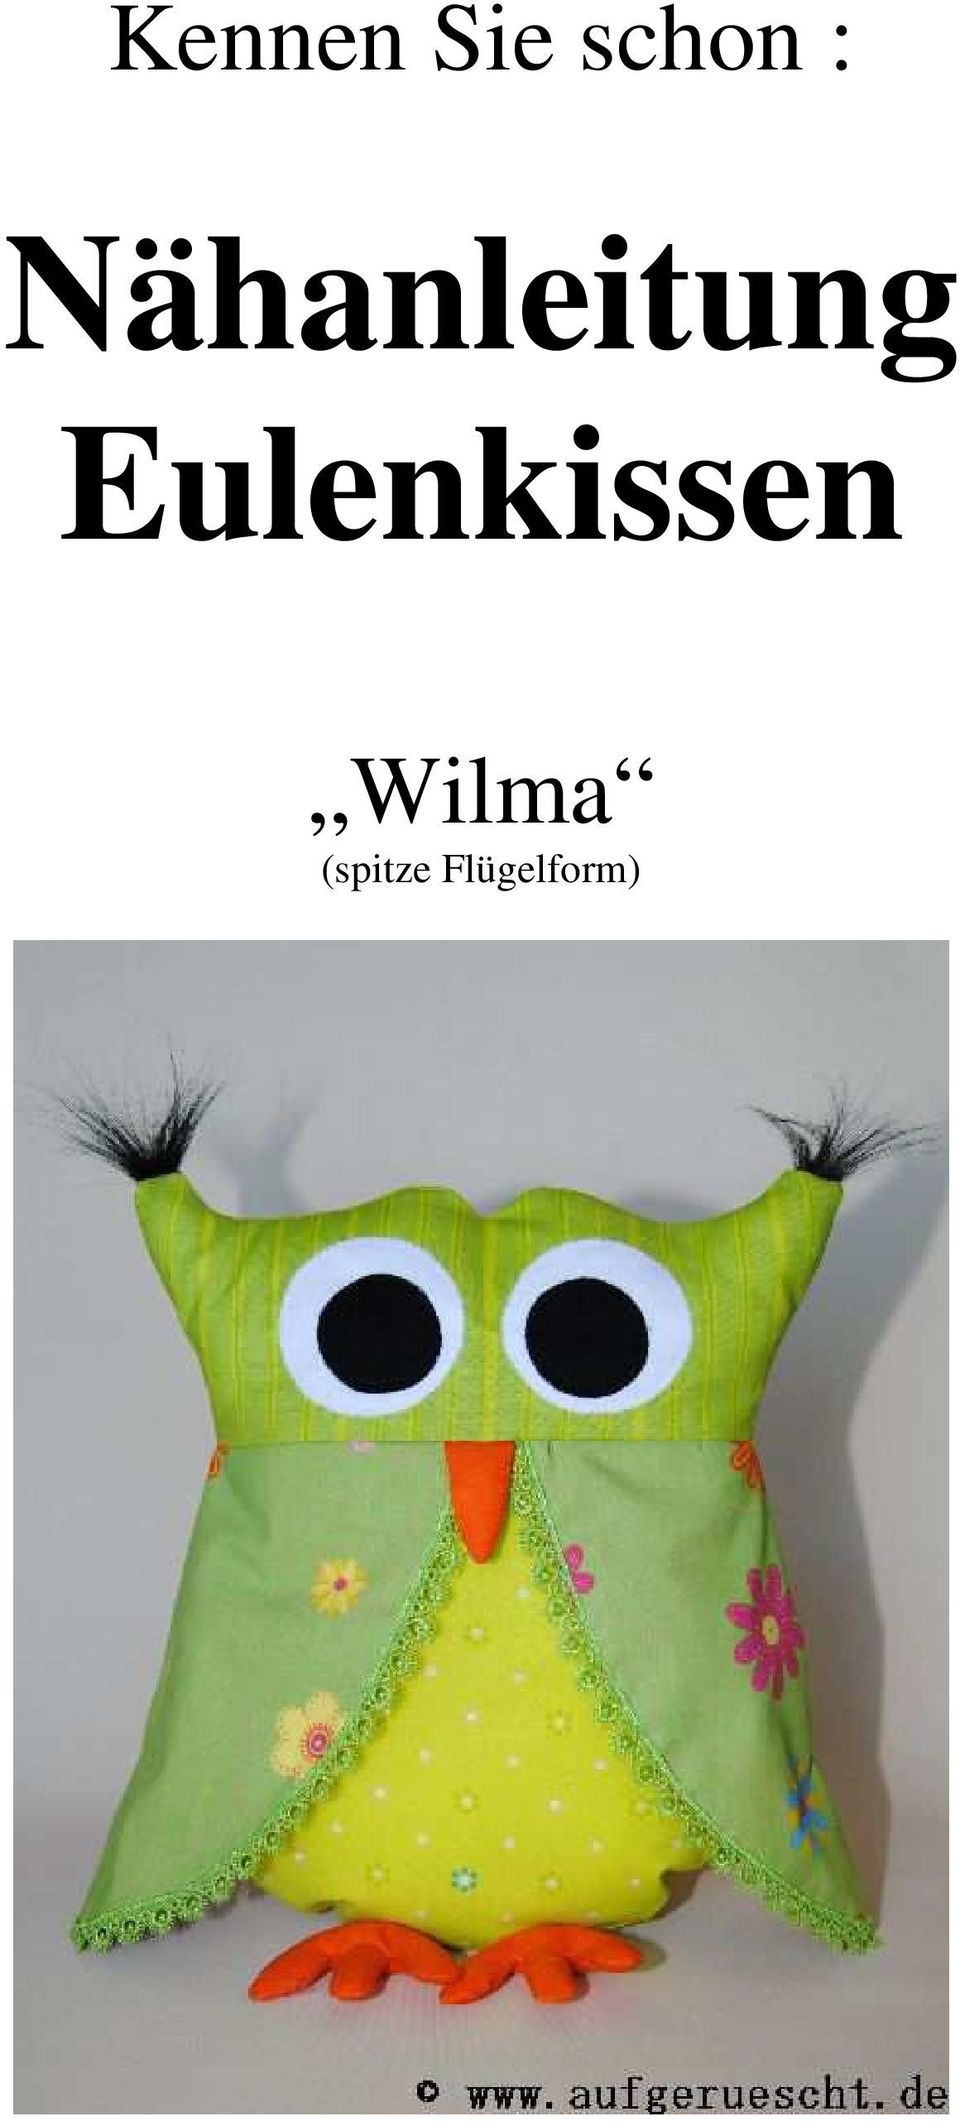 Eulenkissen Wilma